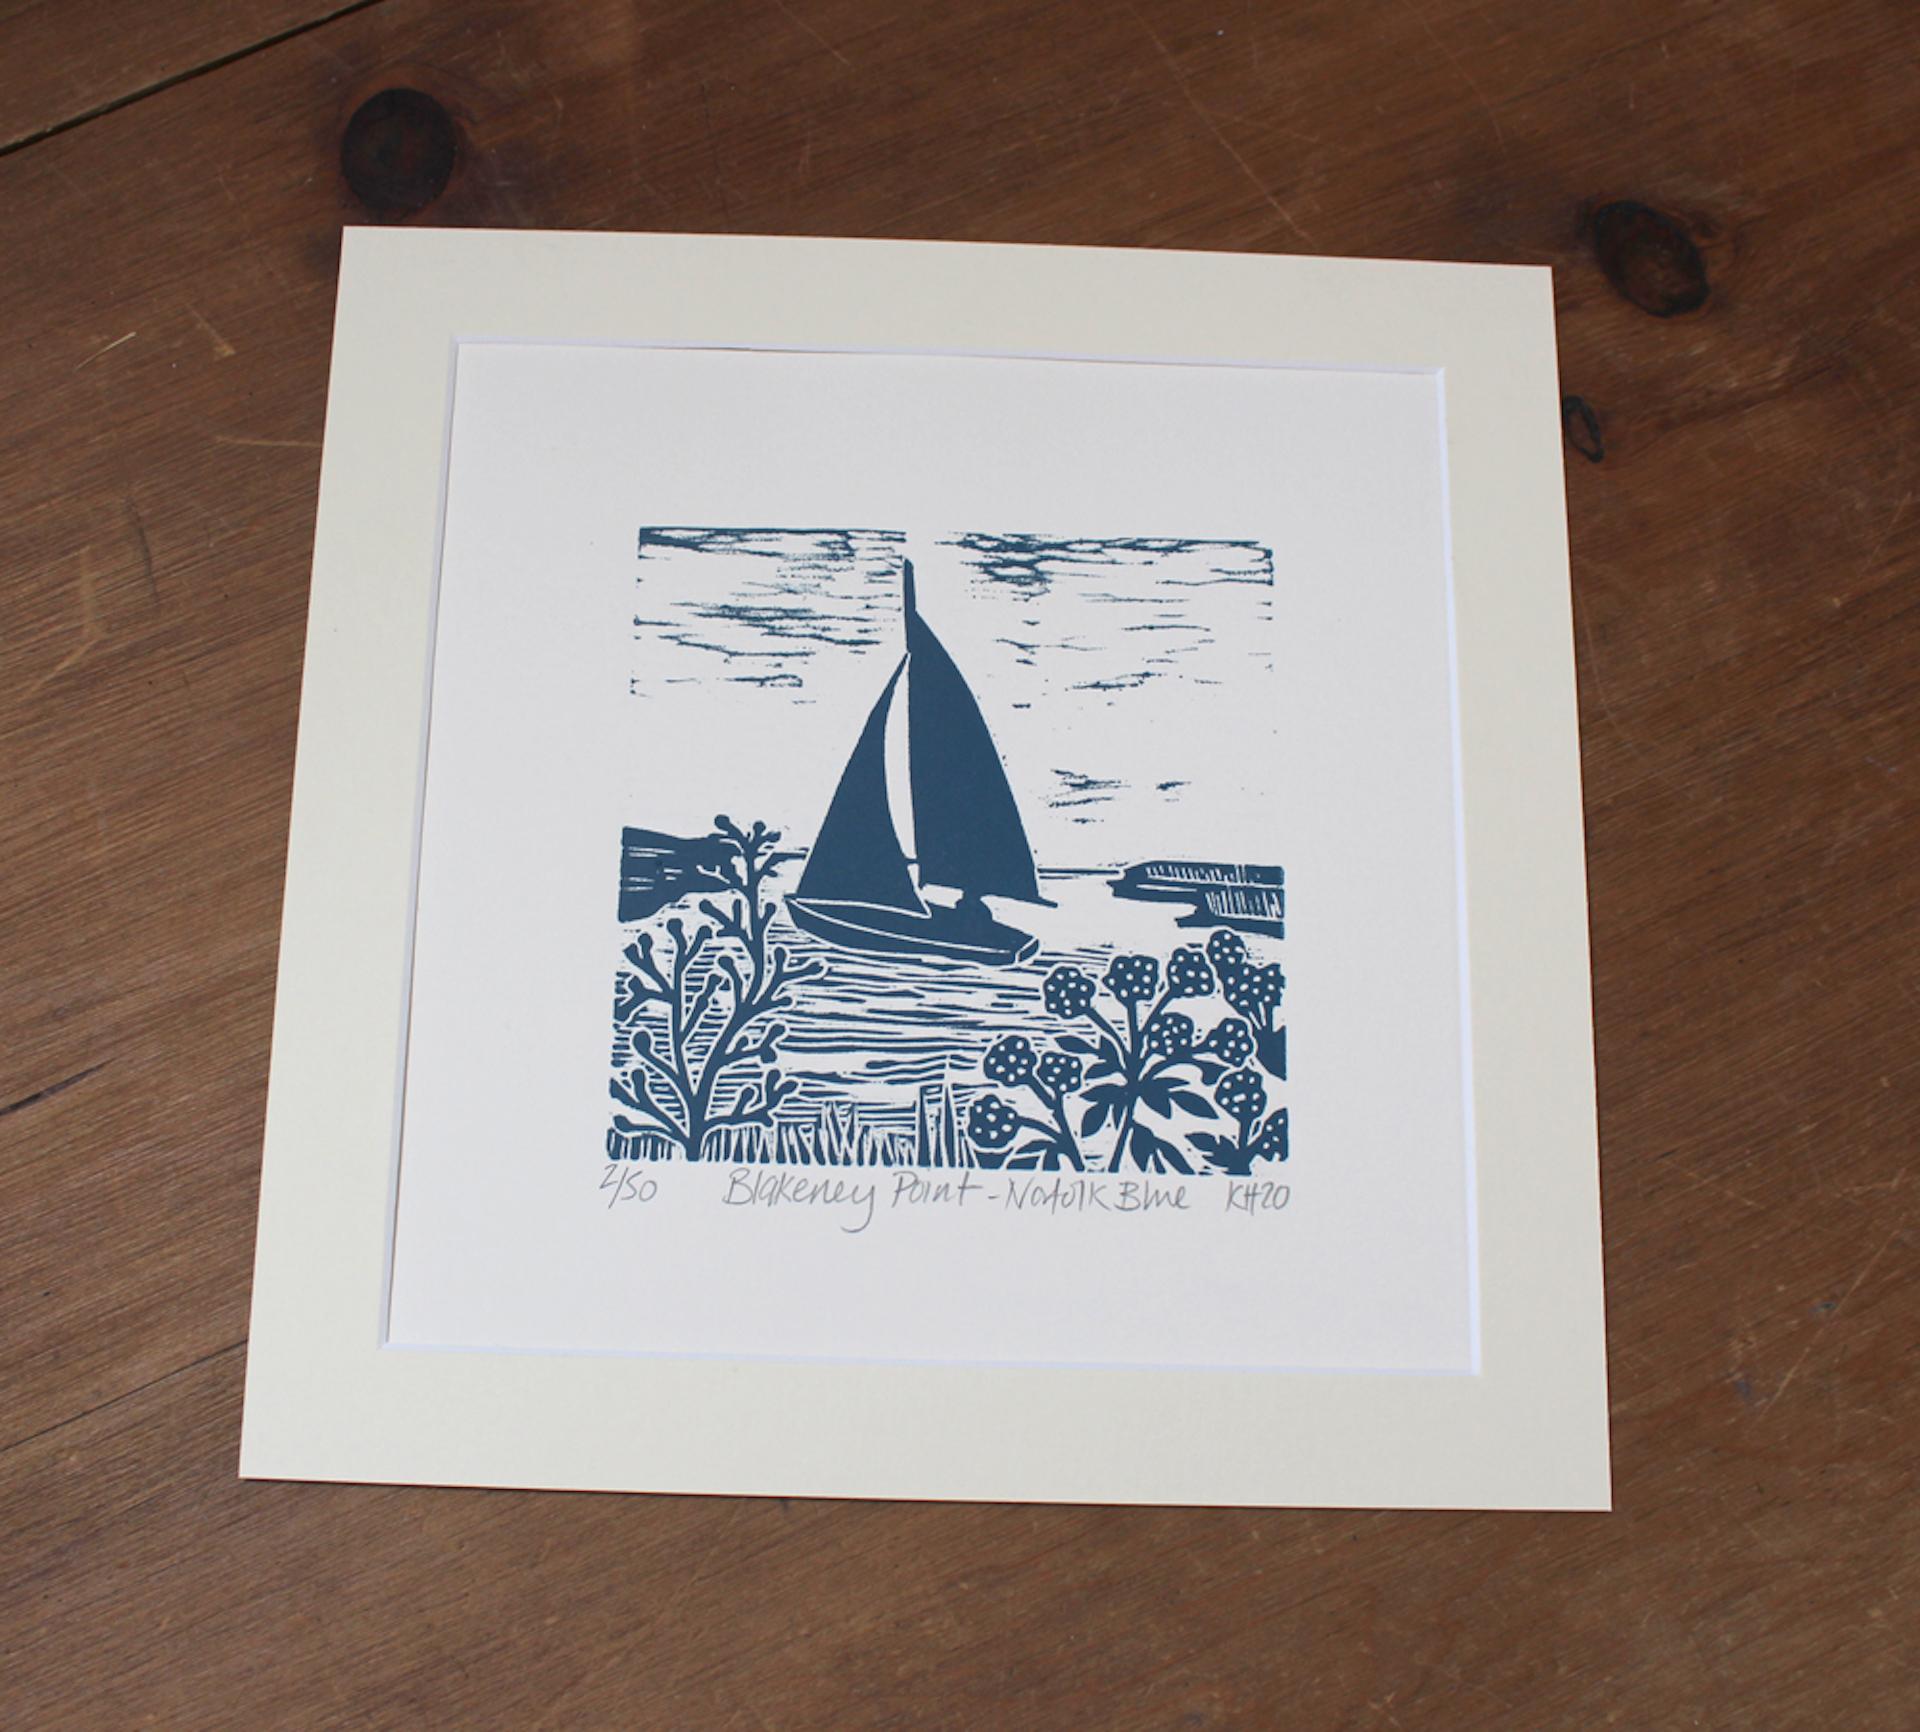 Kate Heiss, Blakeney Point, Bright Art, Sailing Art, Boat Art, Gift ARt 2